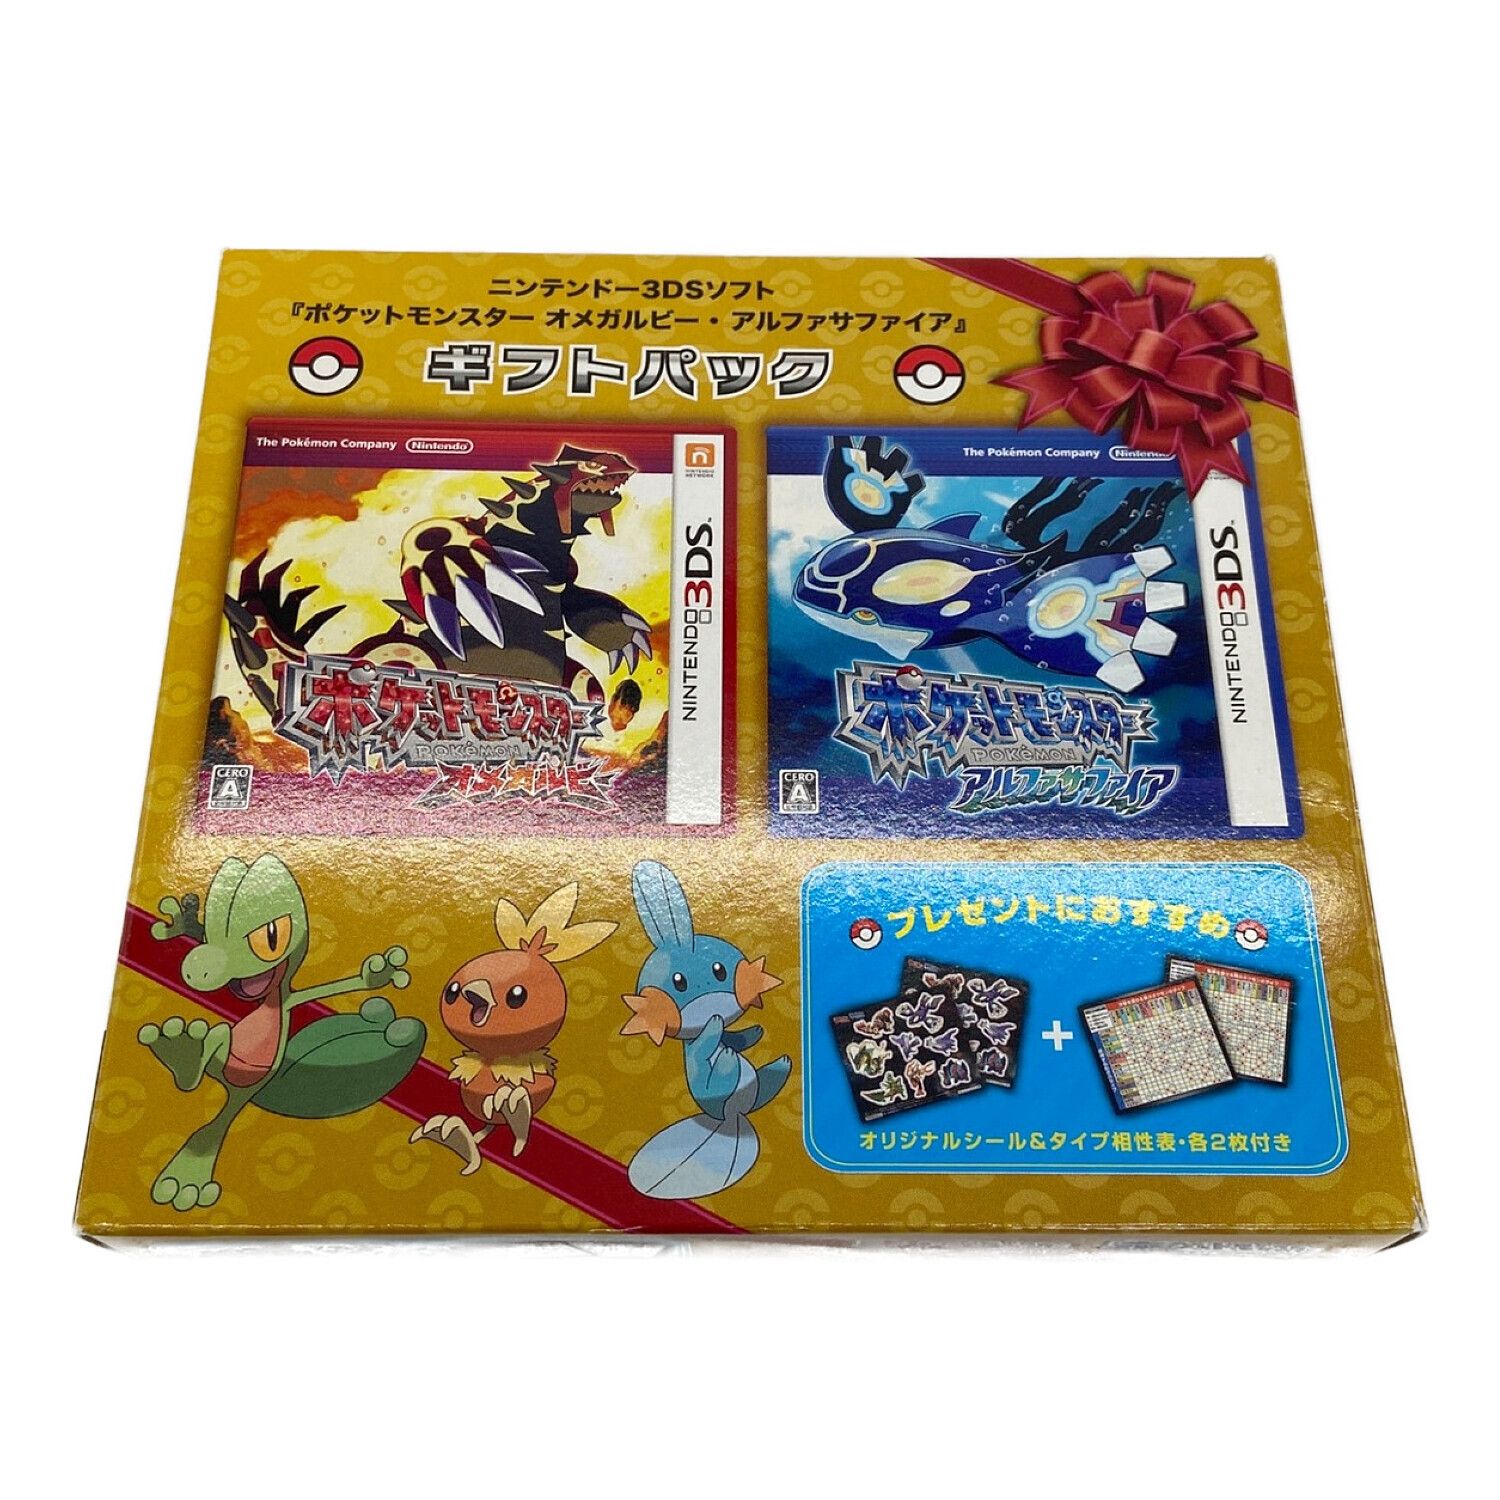 ポケットモンスター オメガルビー - 3DS 【日本産】 - ソフト